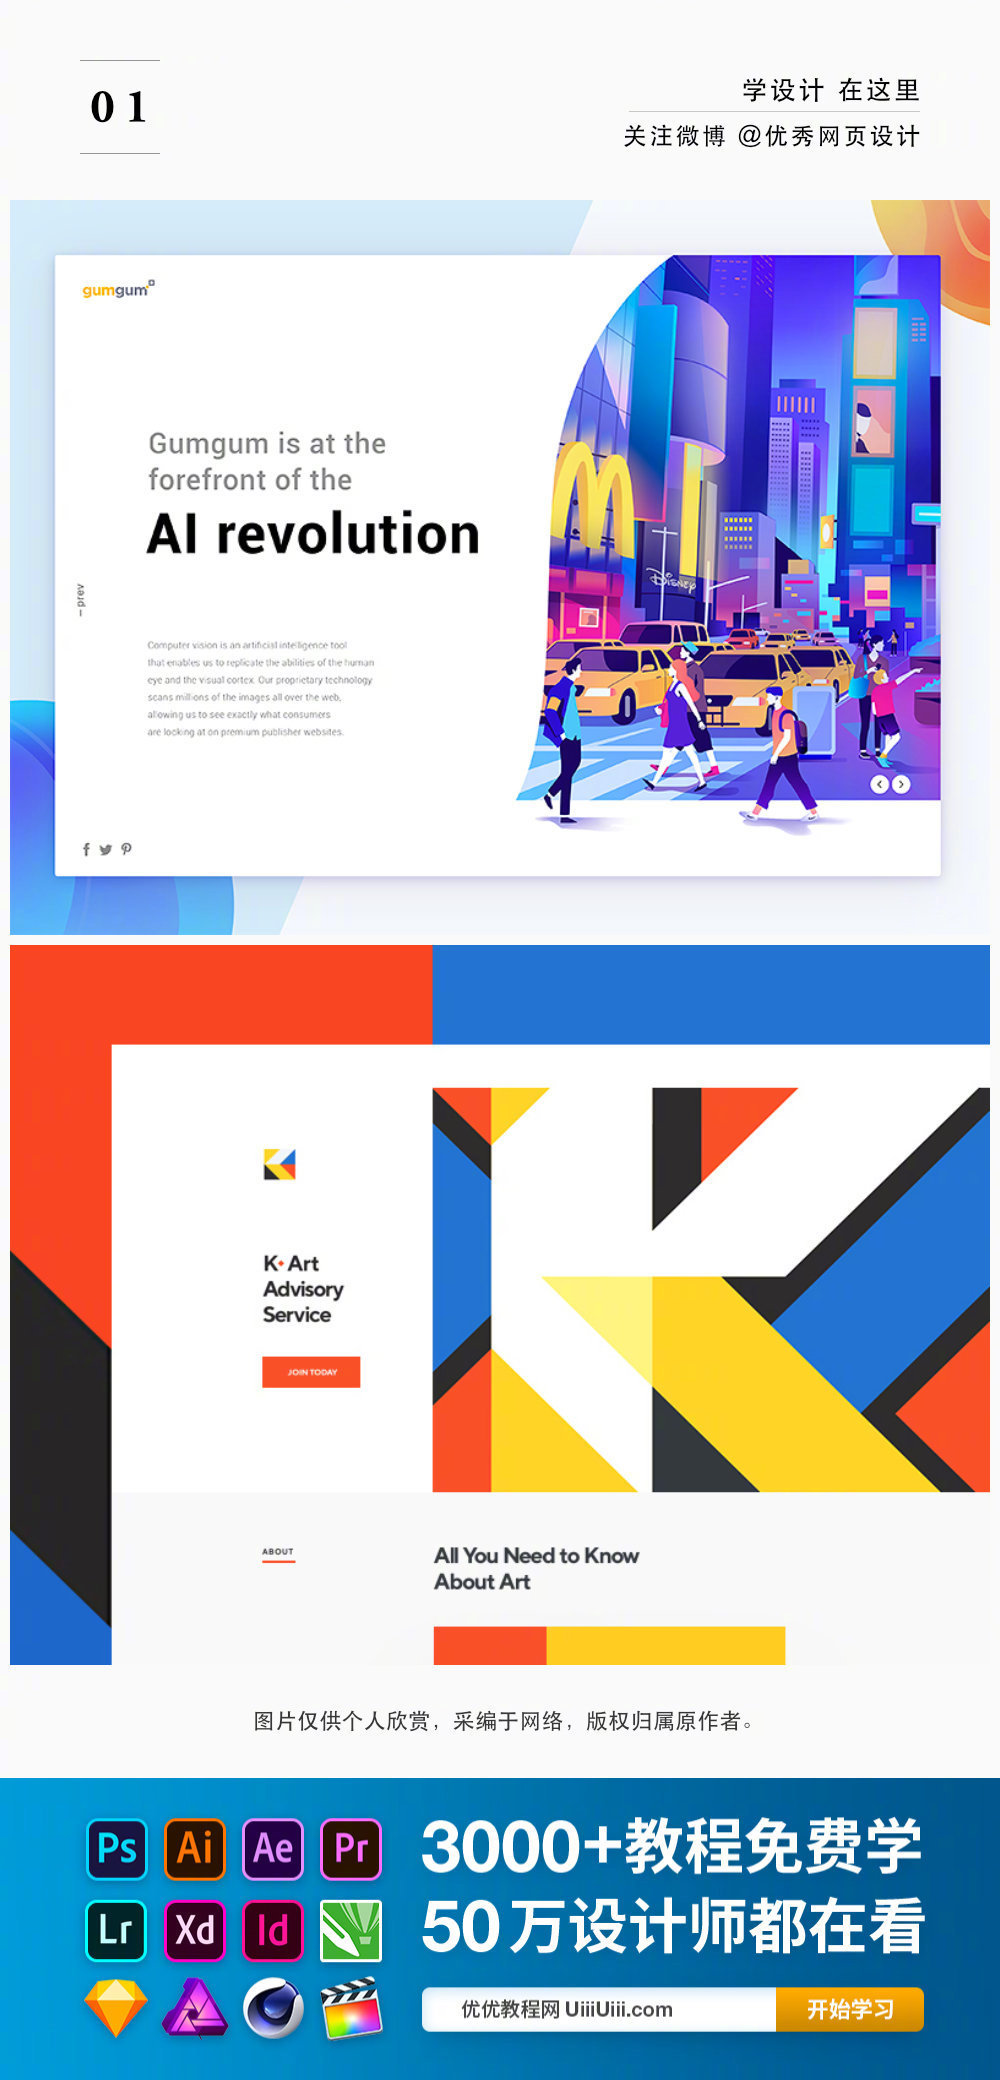 网页设计师的色彩都这么好看的吗？